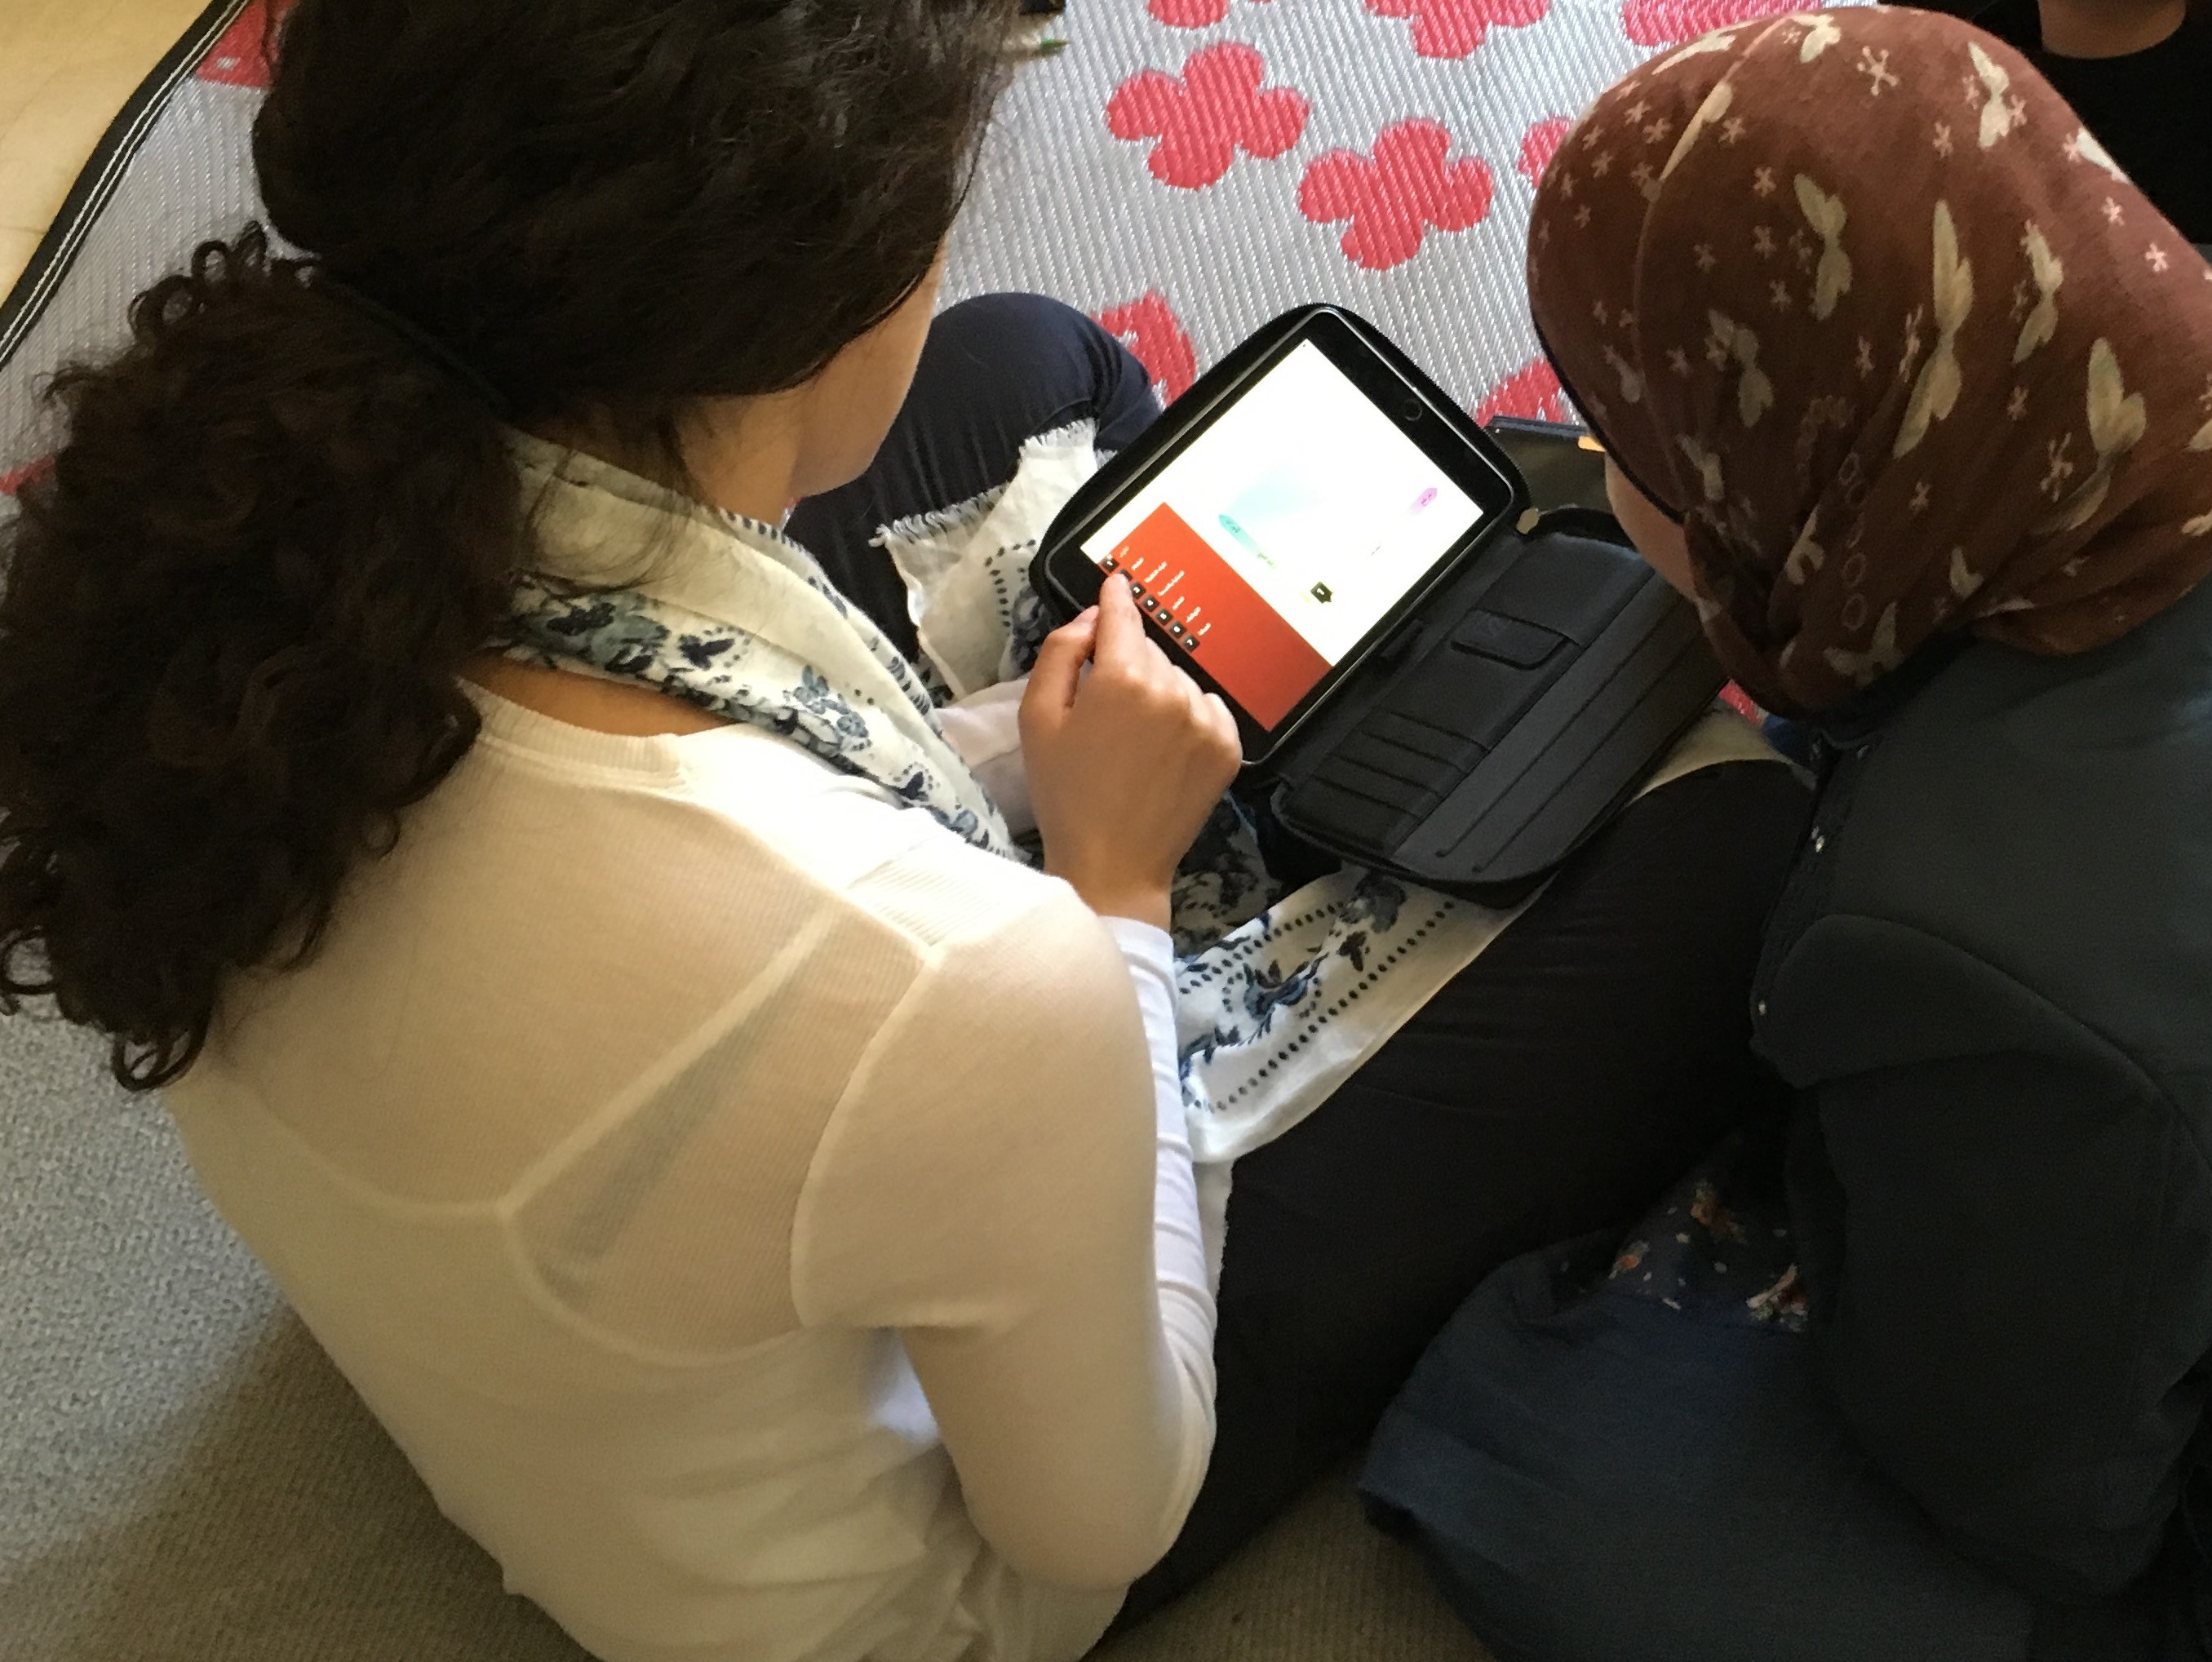 Estudio ayuda a comprender la práctica del matrimonio infantil en el Líbano